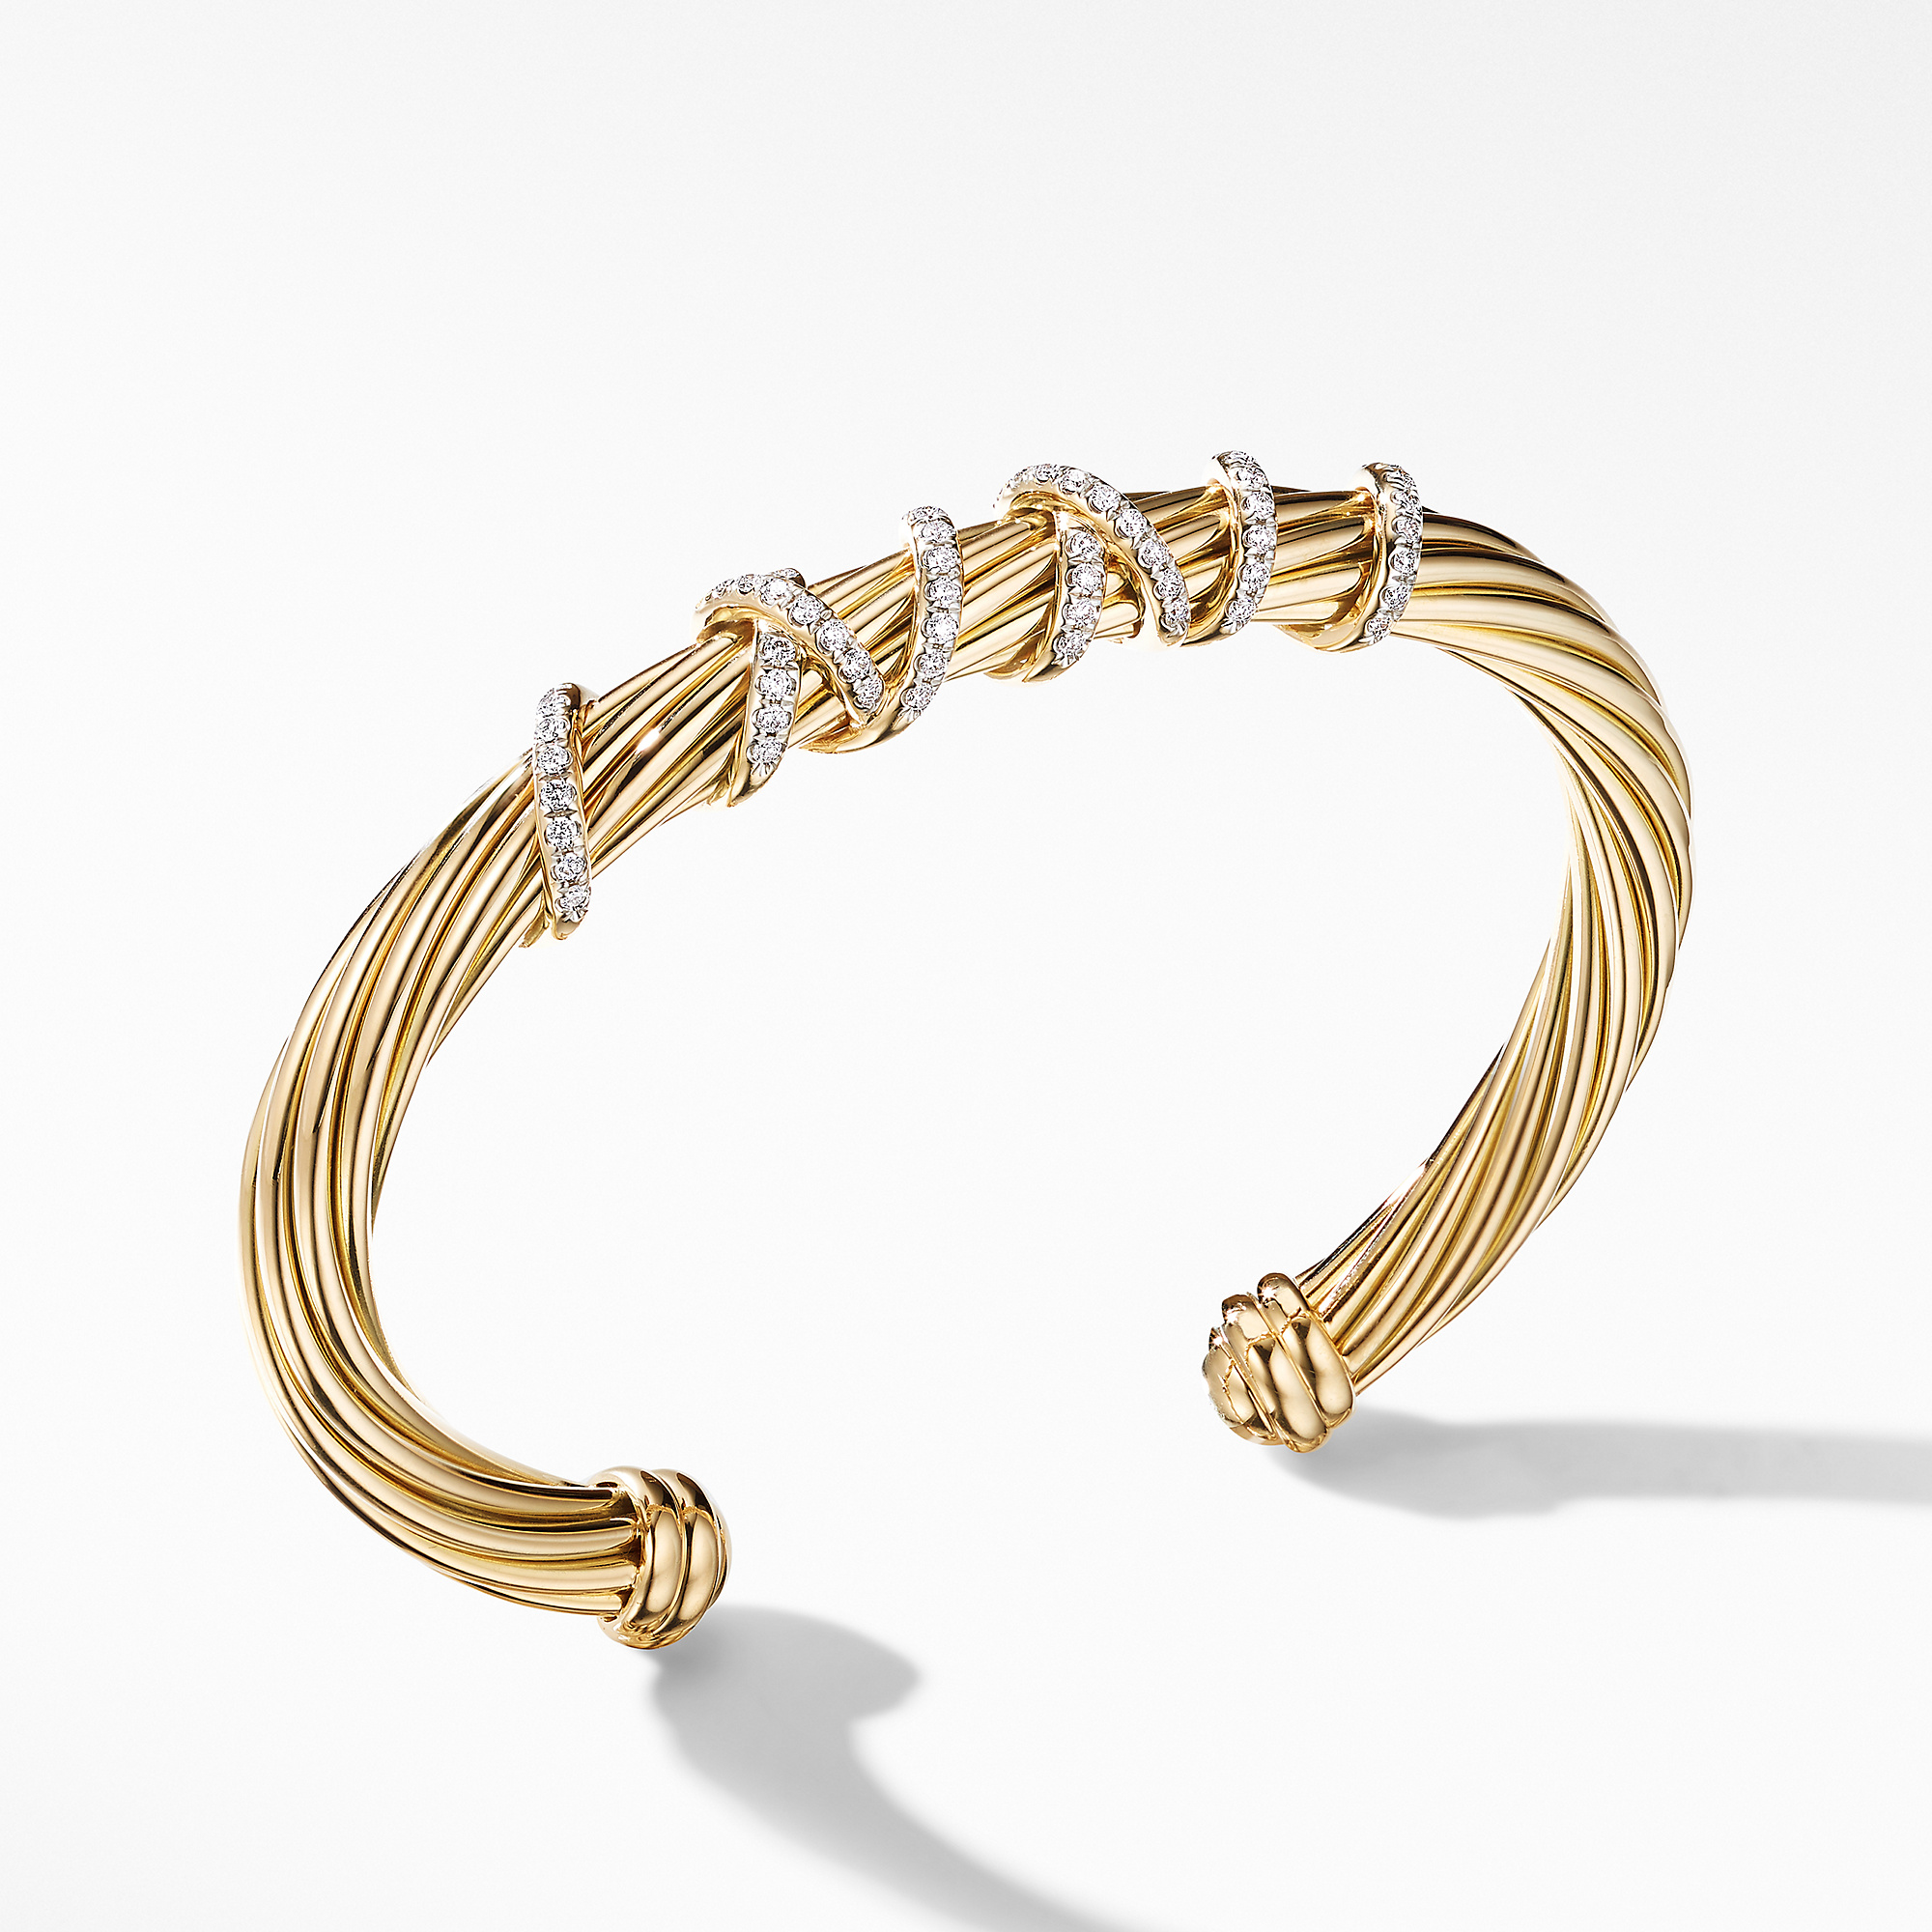 David Yurman Helena Center Station Bracelet in 18K Yellow Gold with Diamonds,  Size M – Bailey's Fine Jewelry